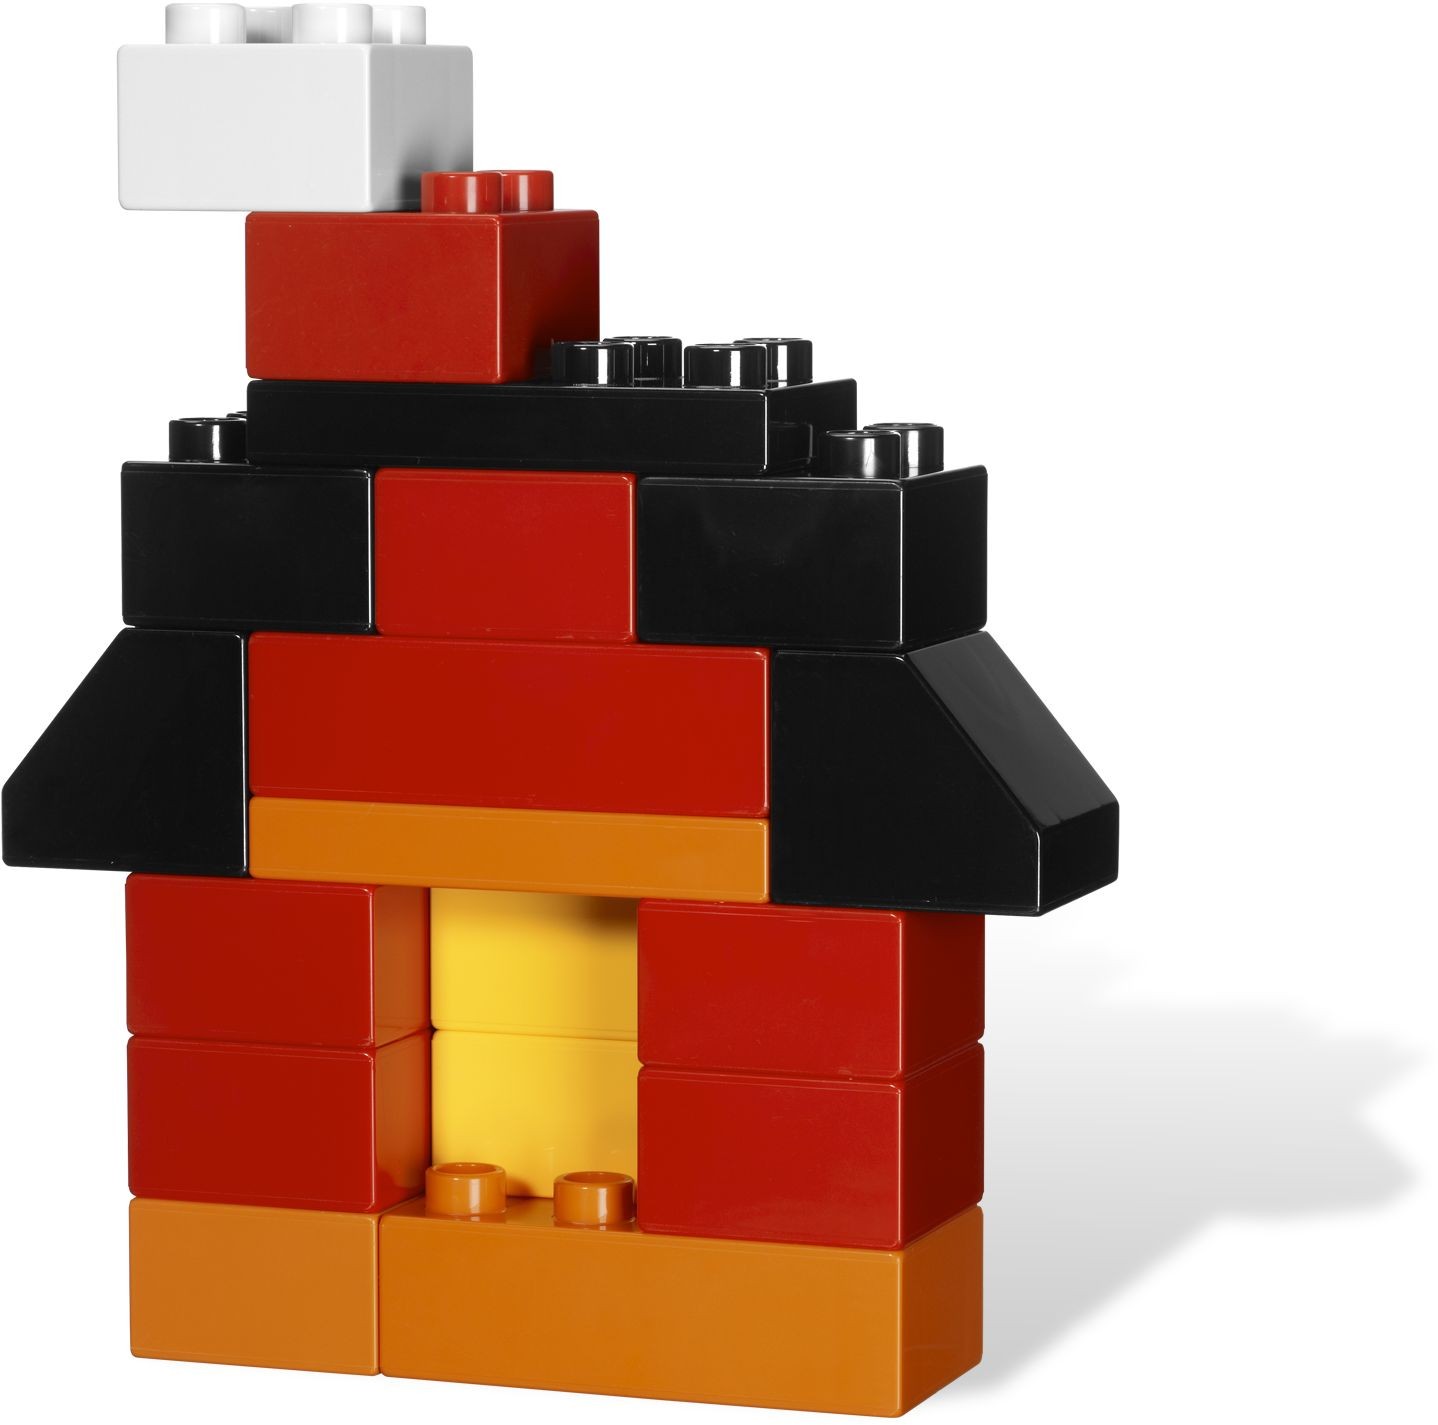 LEGO DUPLO 5548 Building Fun